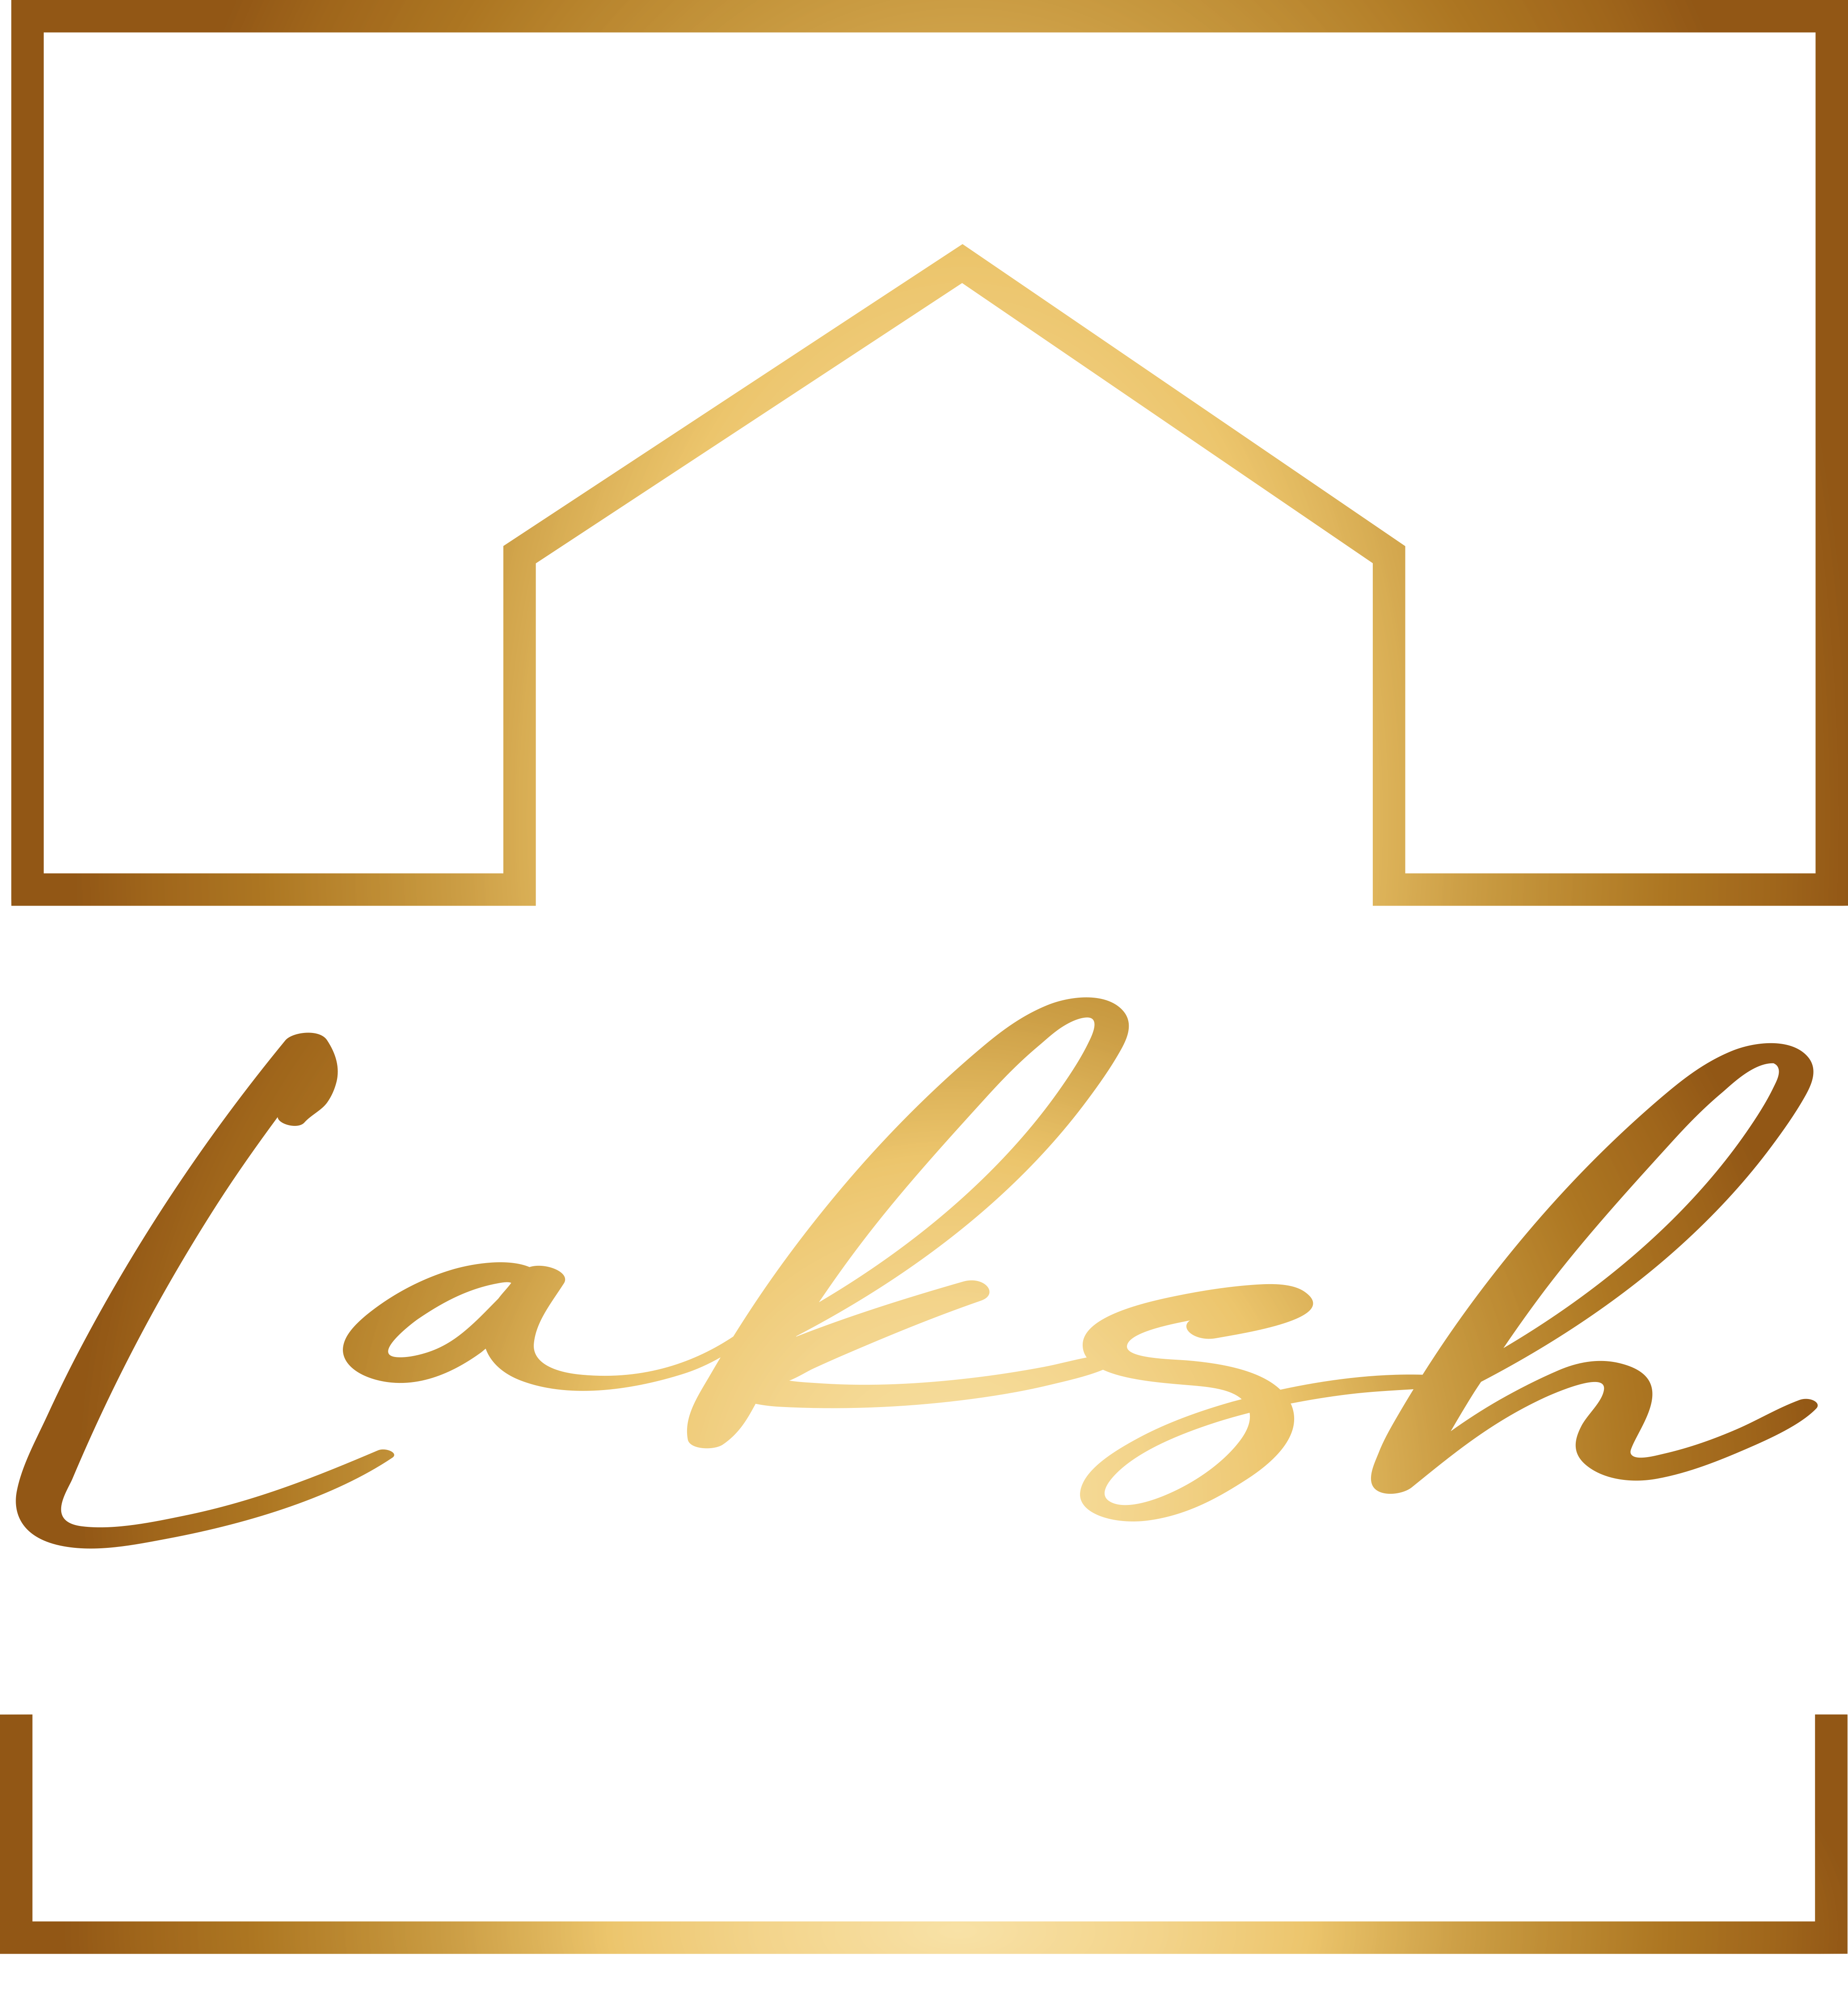 Laksh Homes